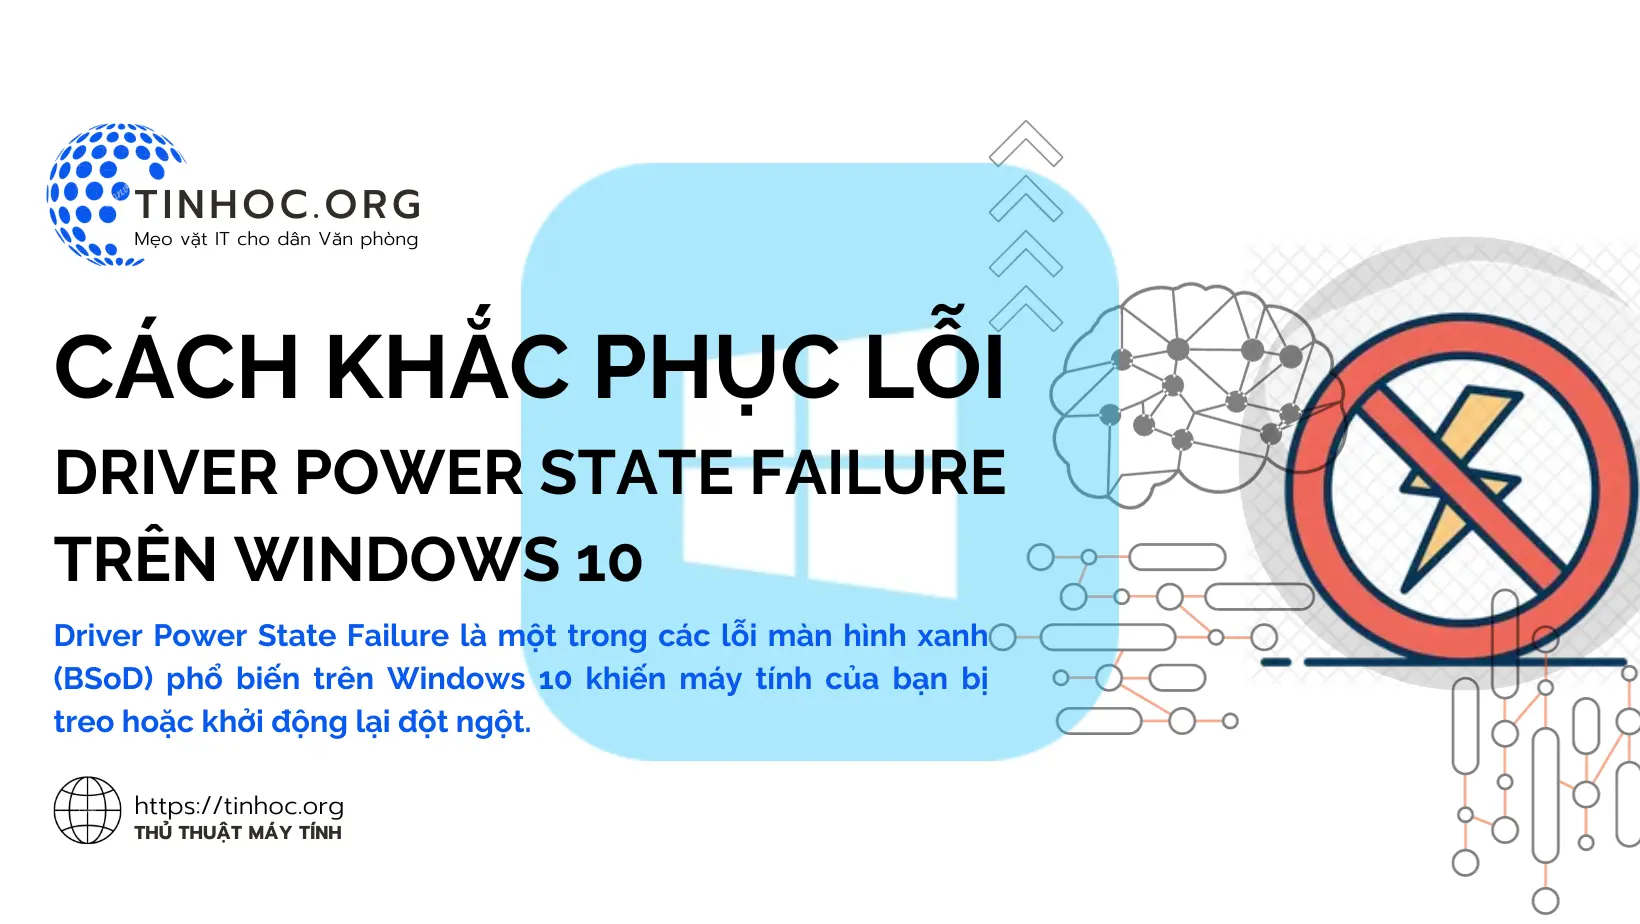 Driver Power State Failure là một trong các lỗi màn hình xanh (BSoD) phổ biến trên Windows 10 khiến máy tính của bạn bị treo hoặc khởi động lại đột ngột.